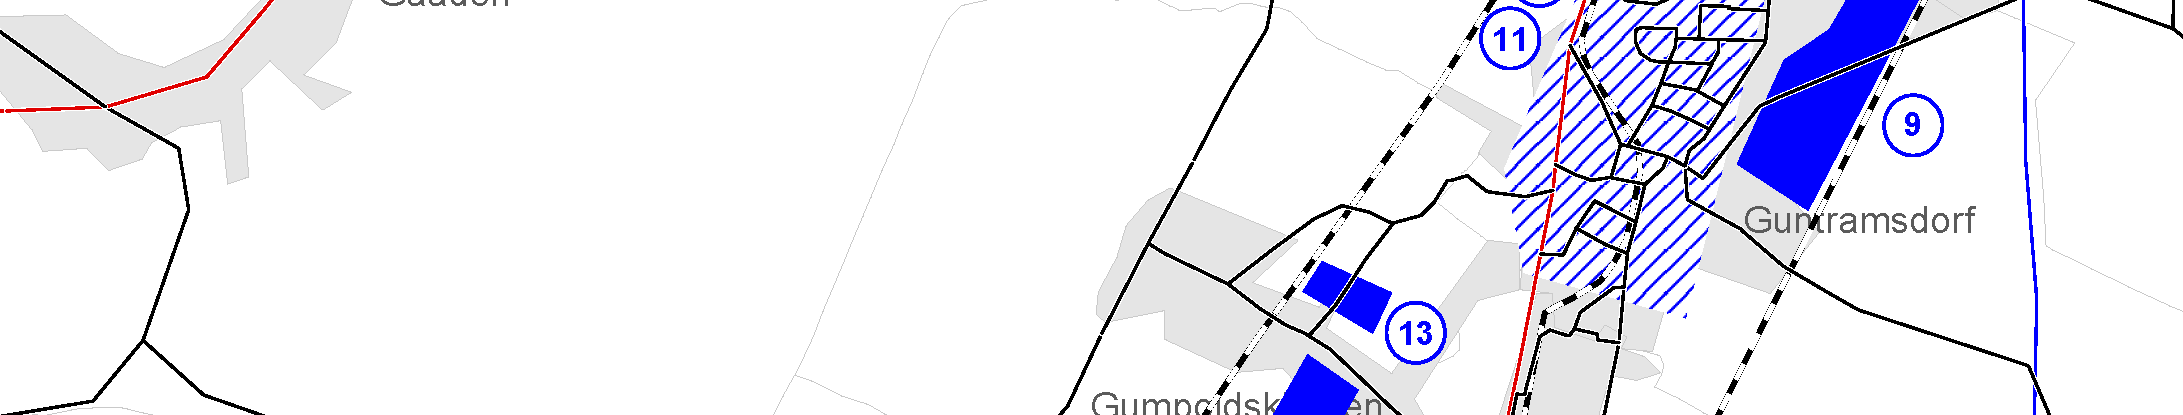 Neudorf: ABB-Gründe 9) Guntramsdorf: